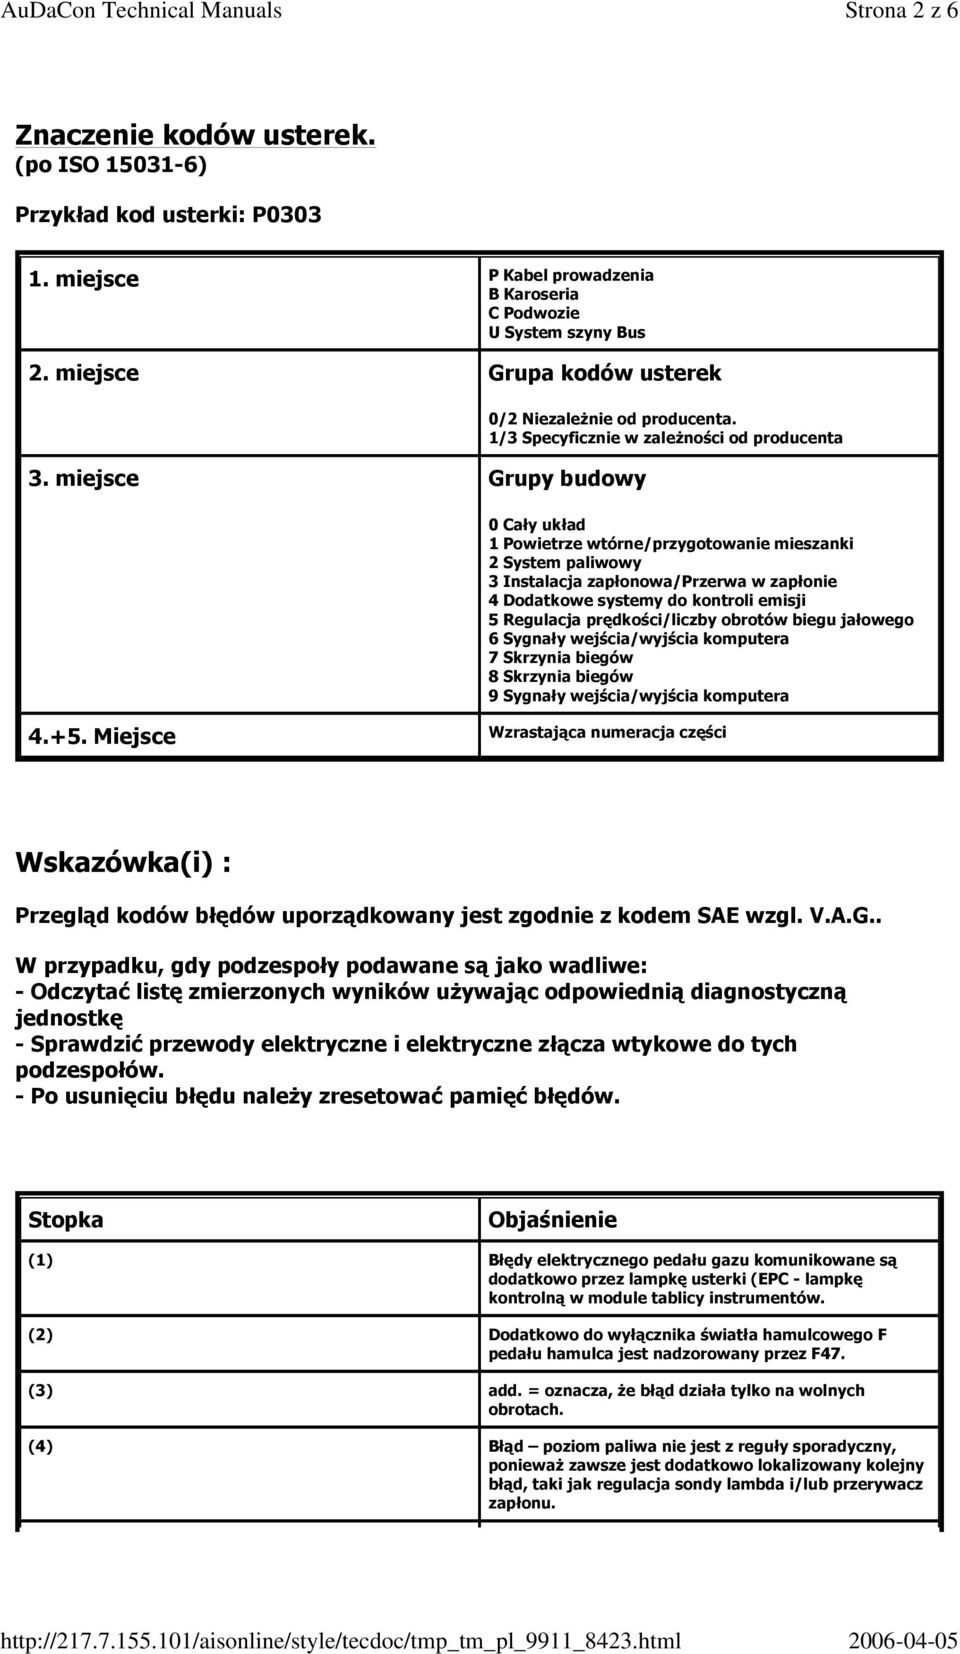 Instrukcja Naprawy Skoda; Fabia (6Y2); 1.4. Eobd - Łącze Diagnostyczne. Audacon Technical Manuals - Pdf Free Download